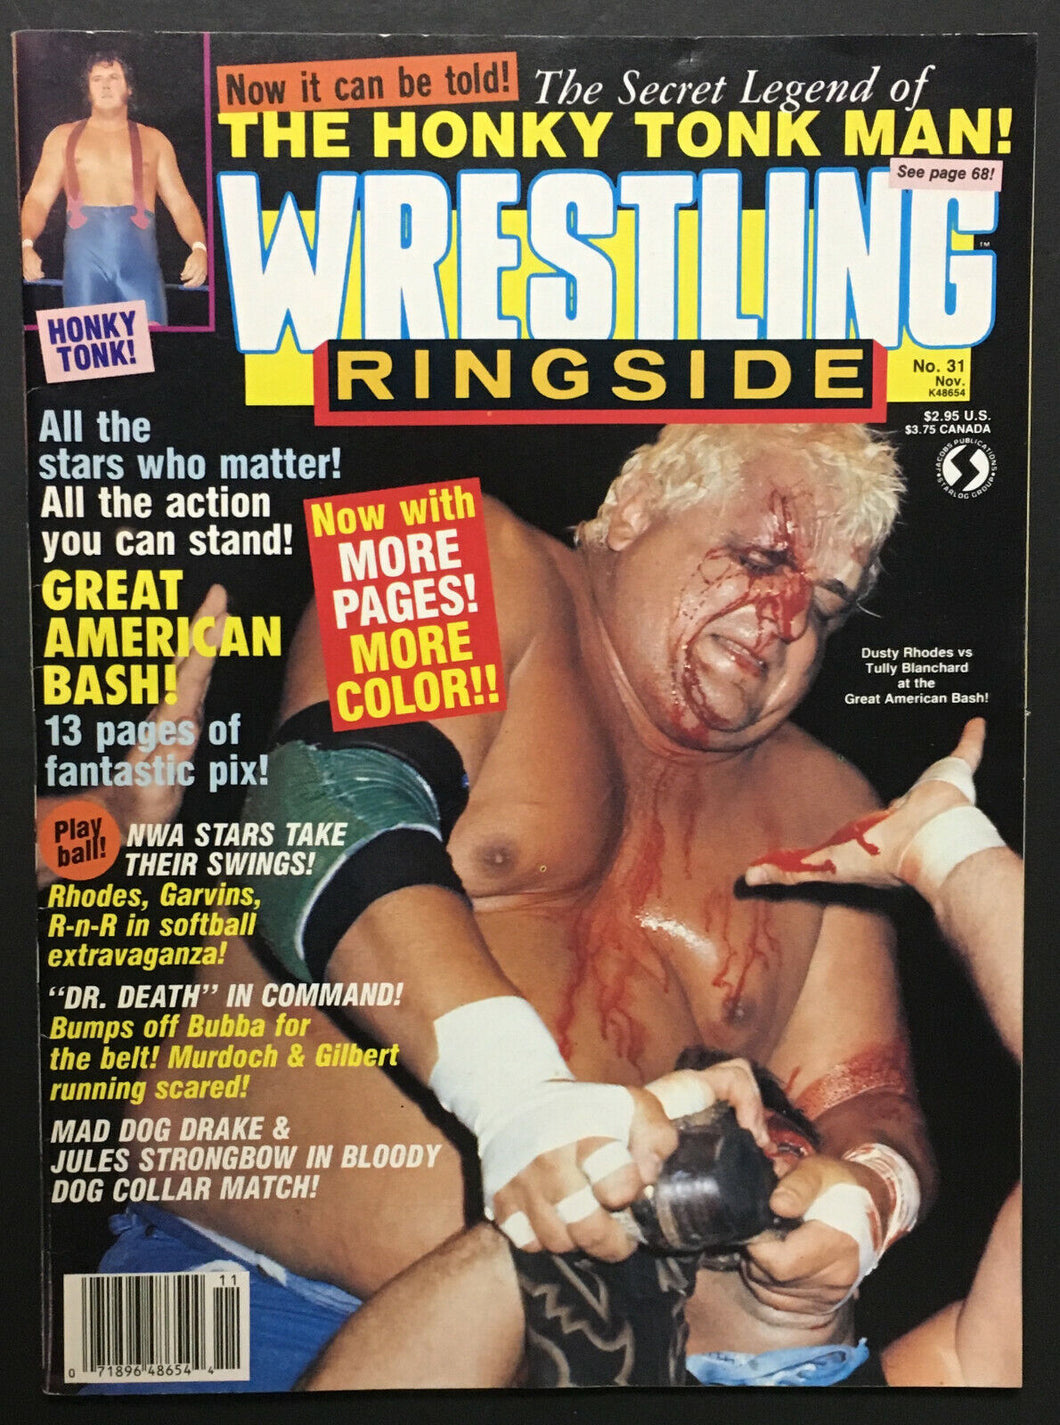 1987 Wrestling Ringside Magazine Honky Tonk Man Vintage WWF Photos Dingo Warrior